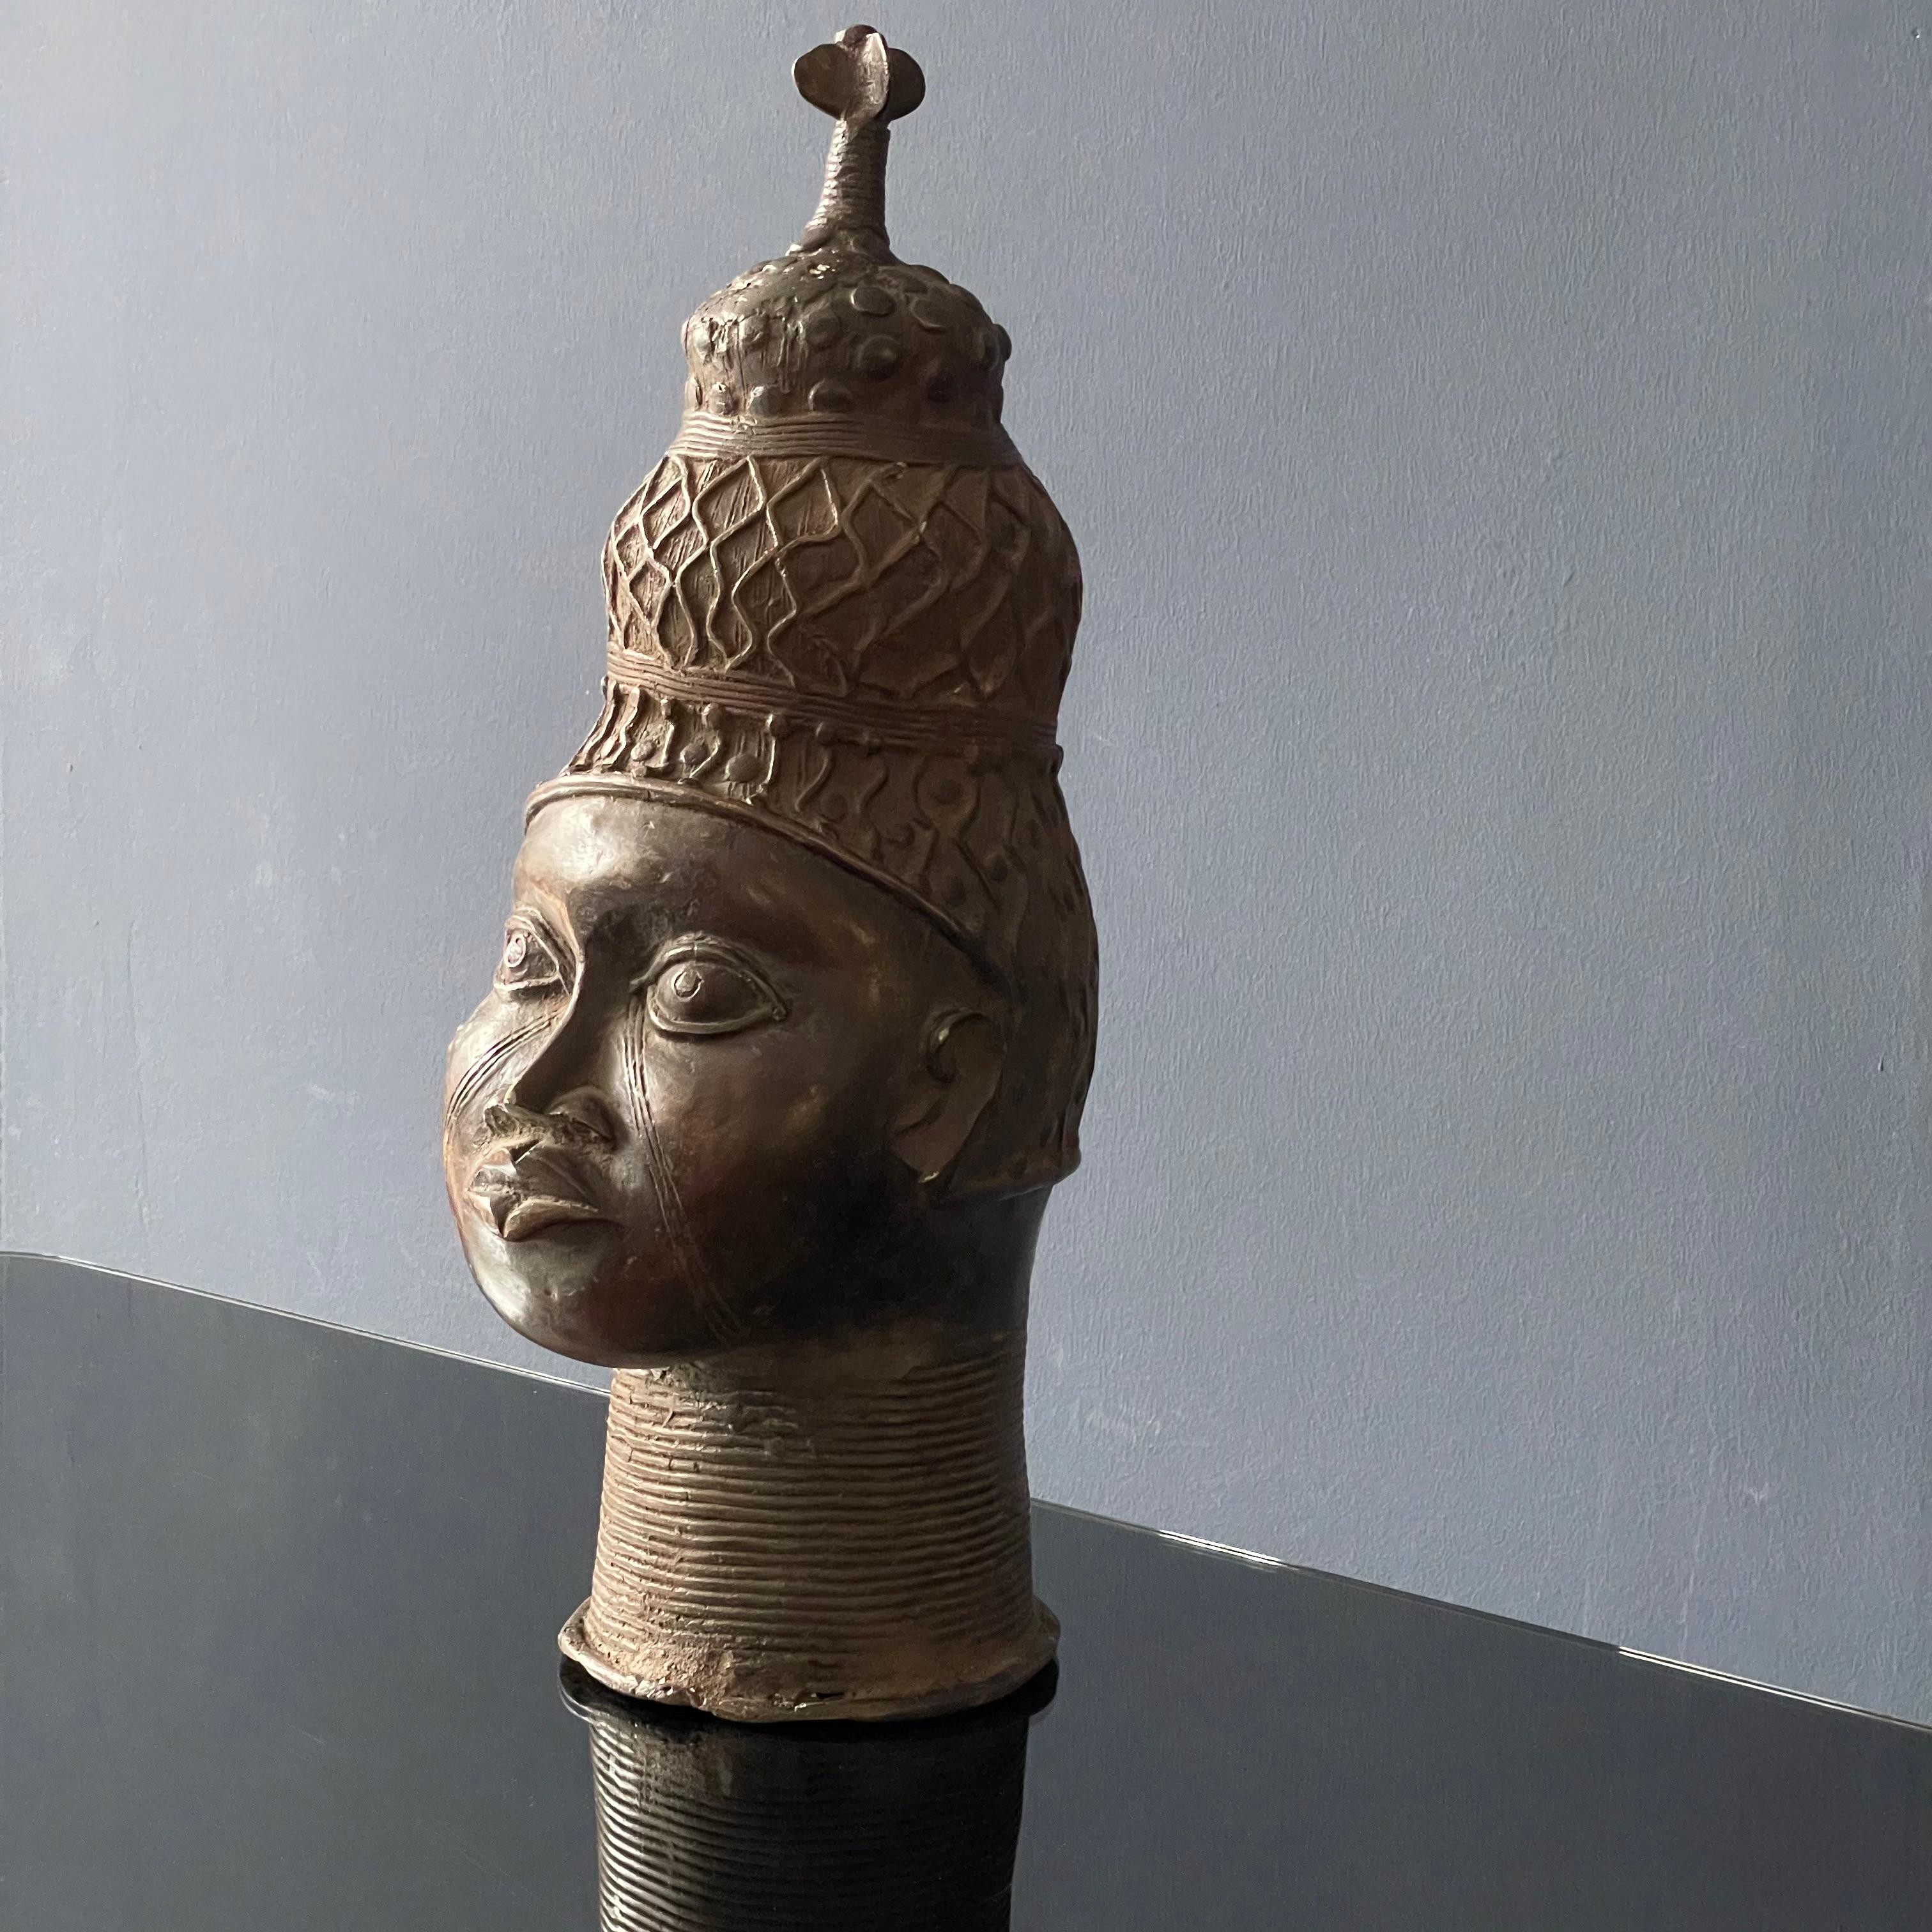 Fabriqués par la tribu Yoruba du Bénin, ils datent du 19e siècle. Créé pour la famille royale.